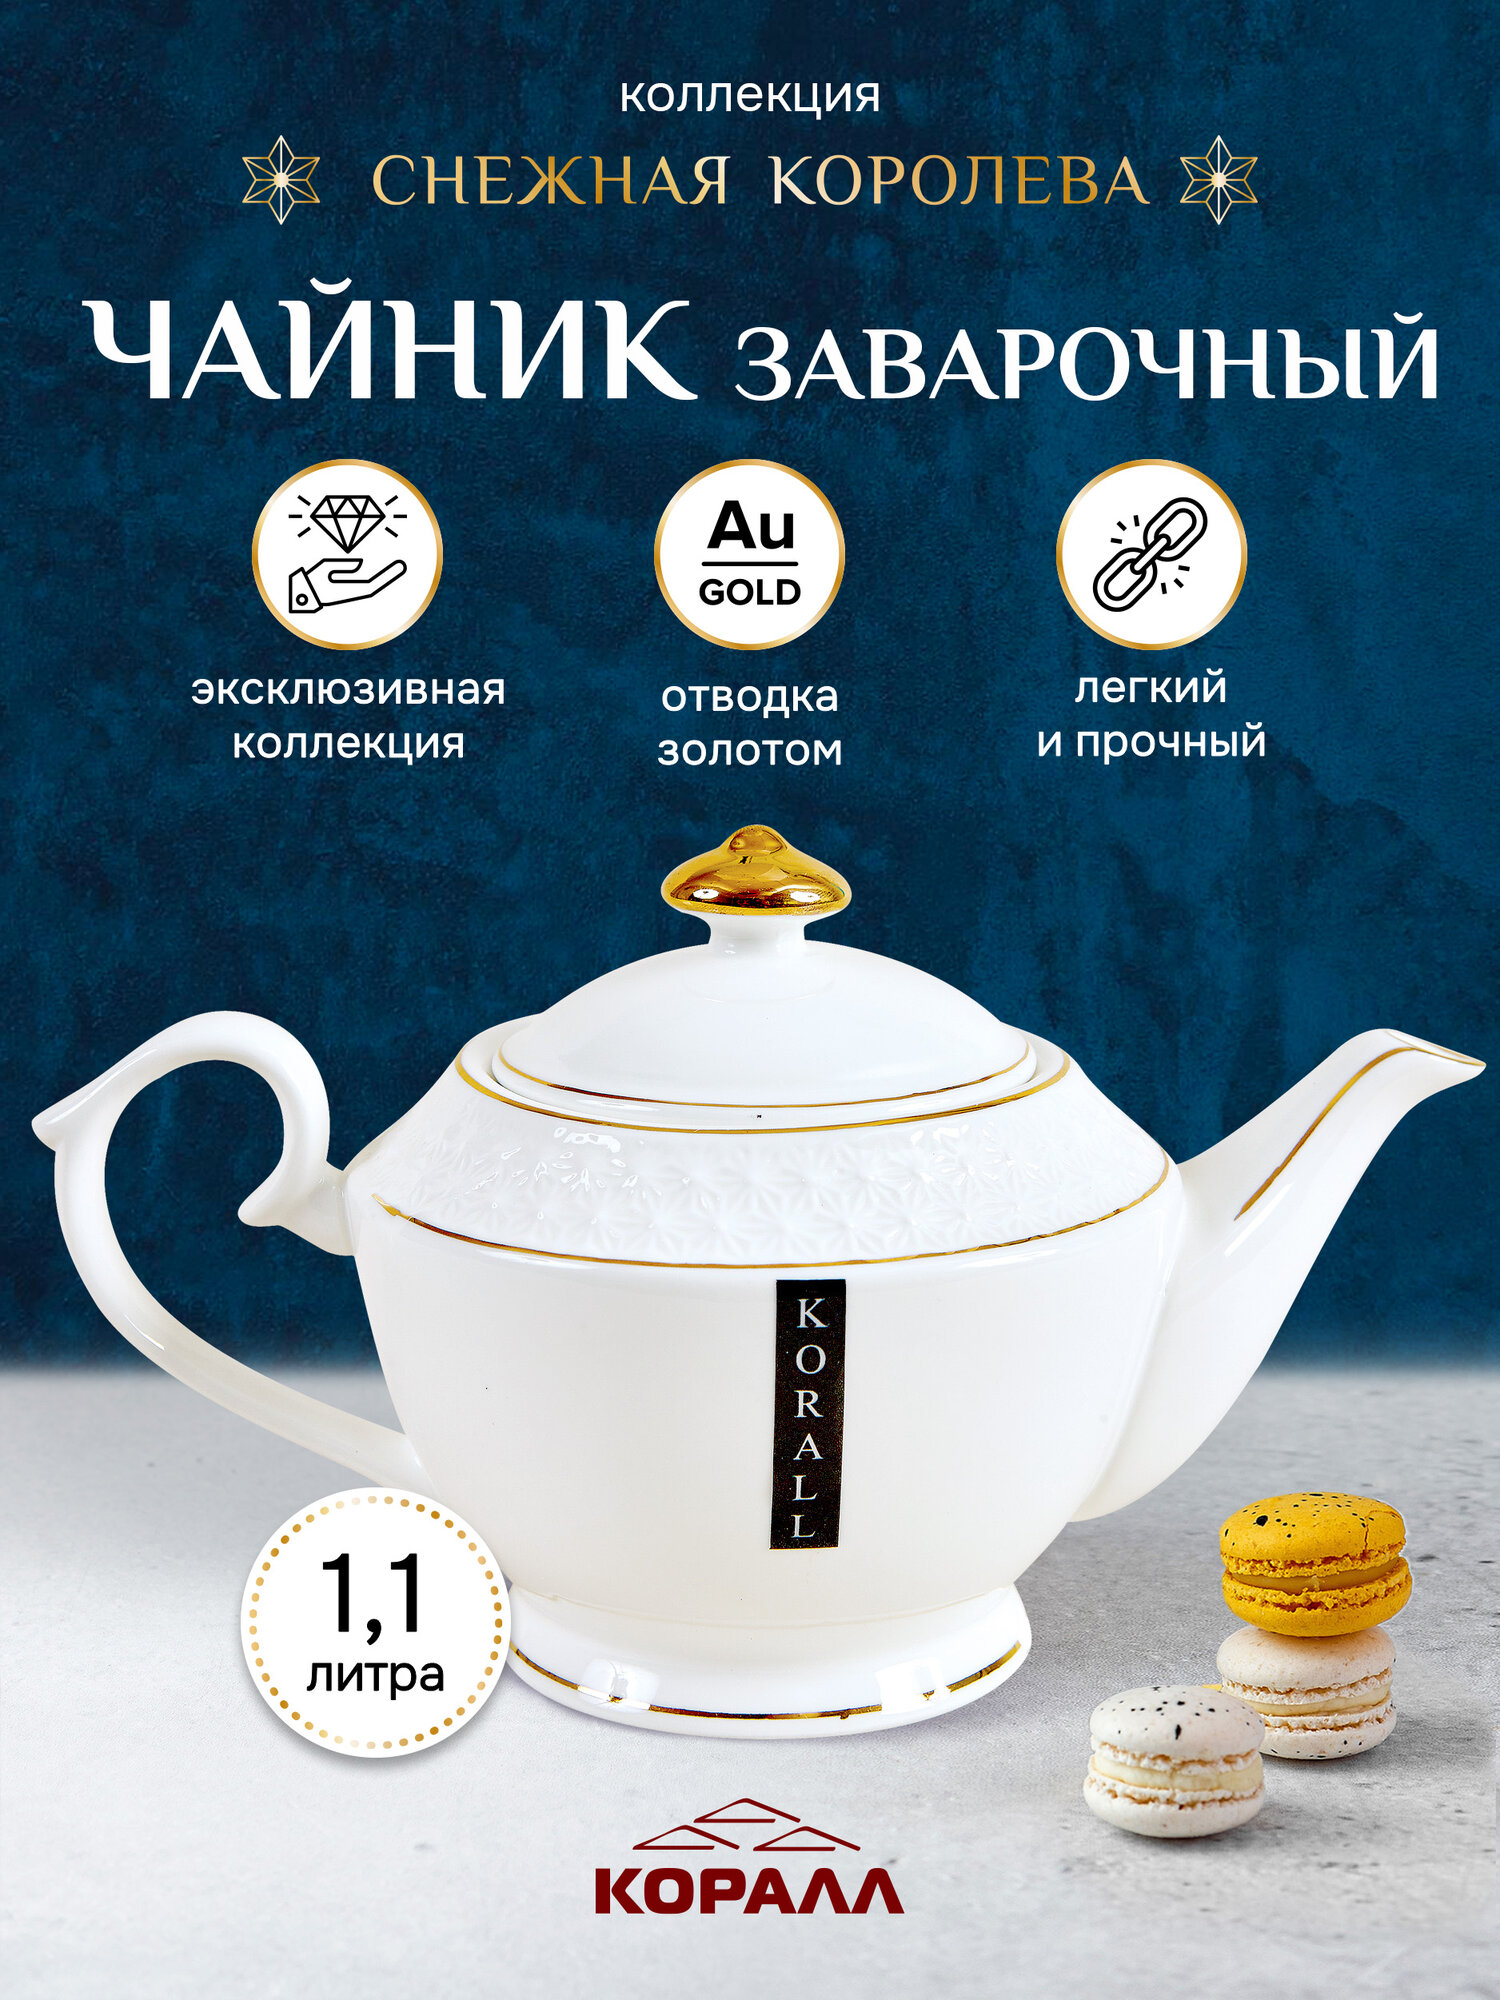 Чайник заварочный белый "Снежная королева" 1100 мл керамика